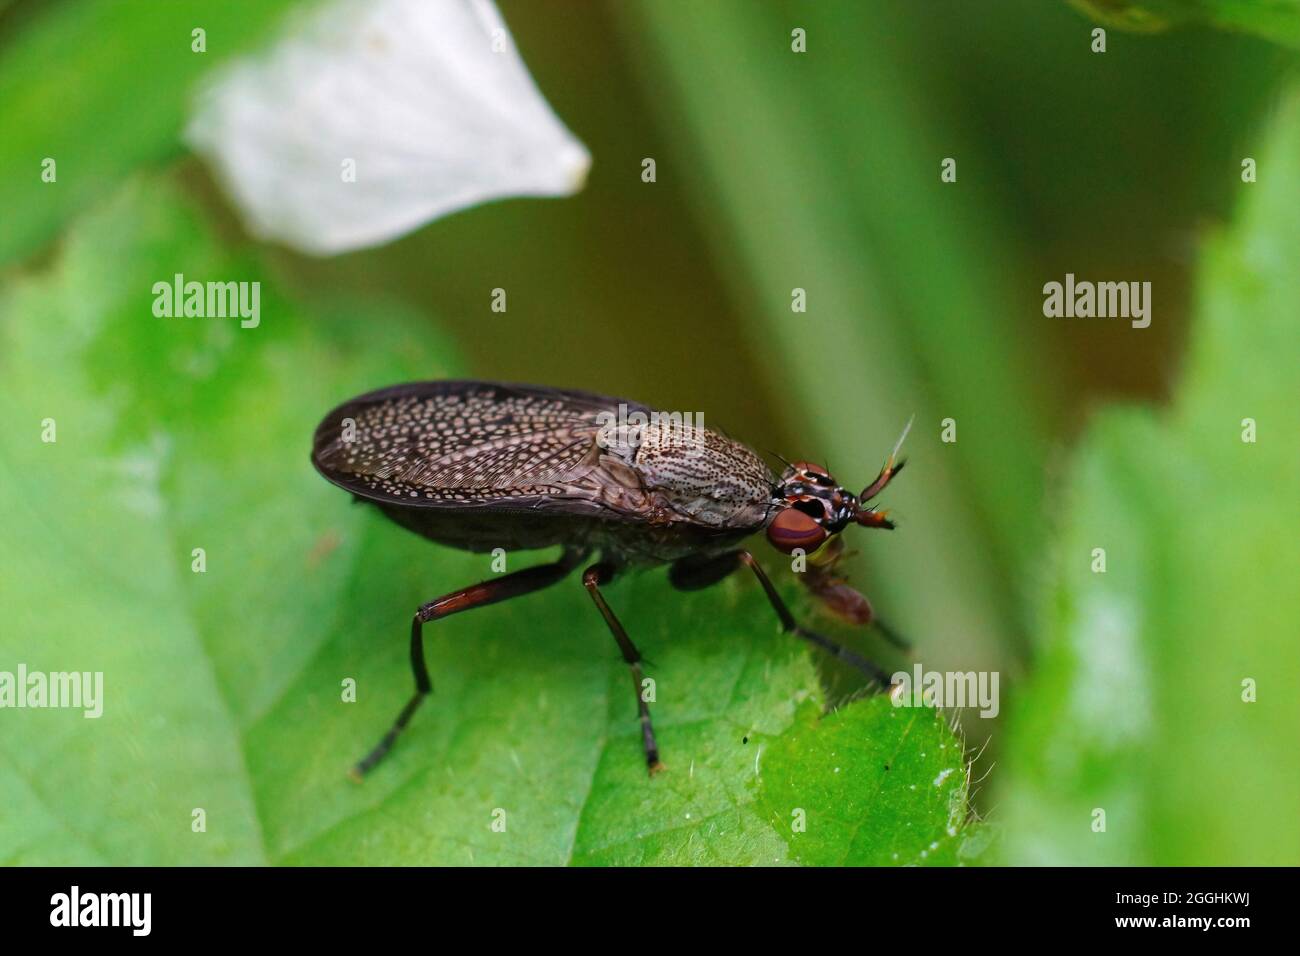 Closeup on a dark snail killing fly, Coremacera marginata Stock Photo